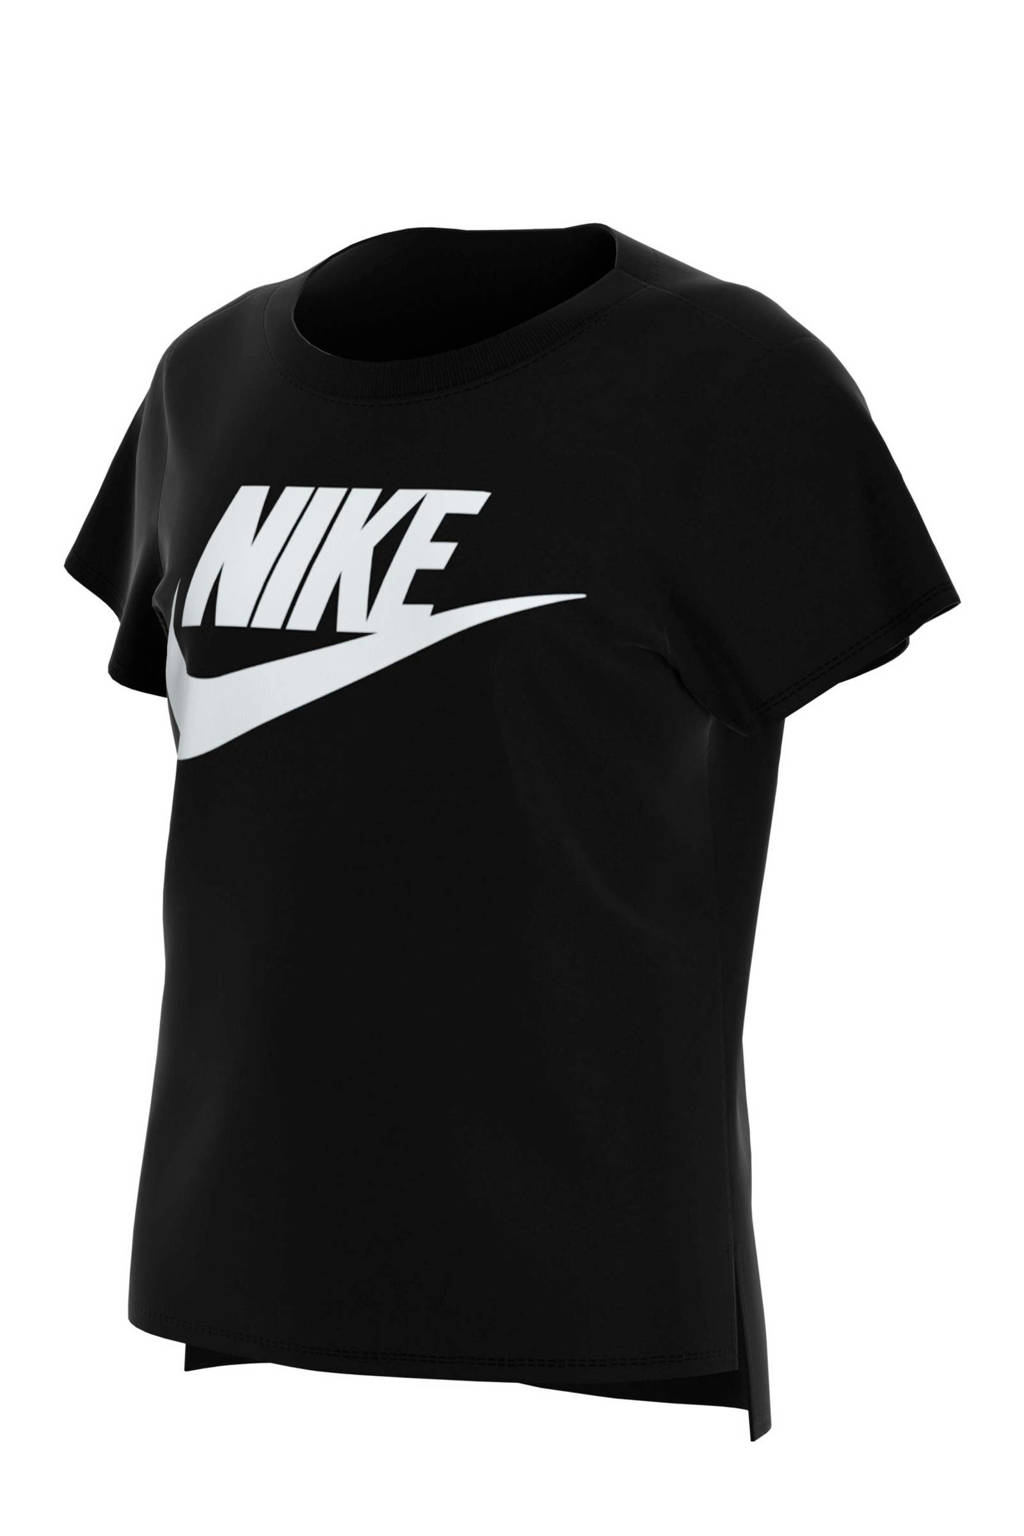 Nike T-shirt zwart, Zwart